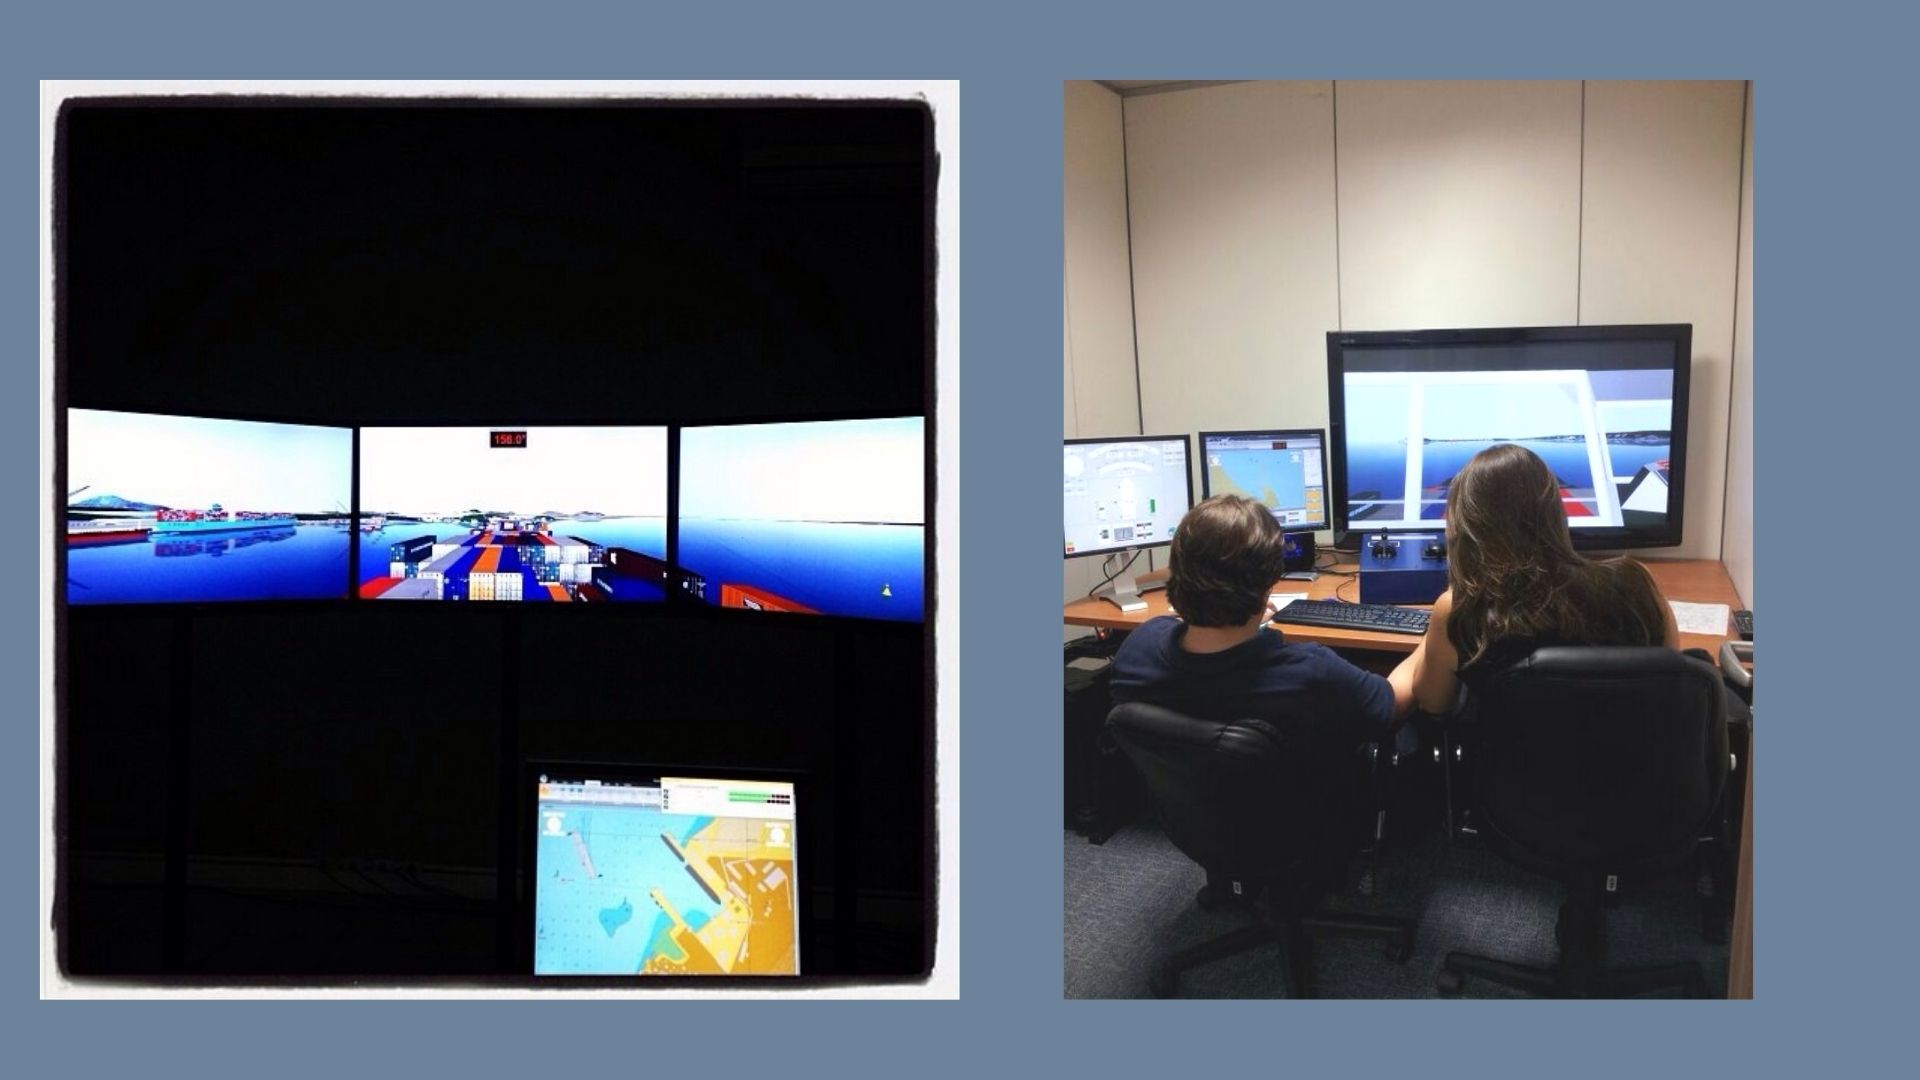 Duas imagens lado a lado. A da esquerda mostra quatro telas mostrando um simulador de navios. A imagem da direita são duas pessoas, um homem e uma mulher, de costas, olhando pra telas do mesmo simulador.